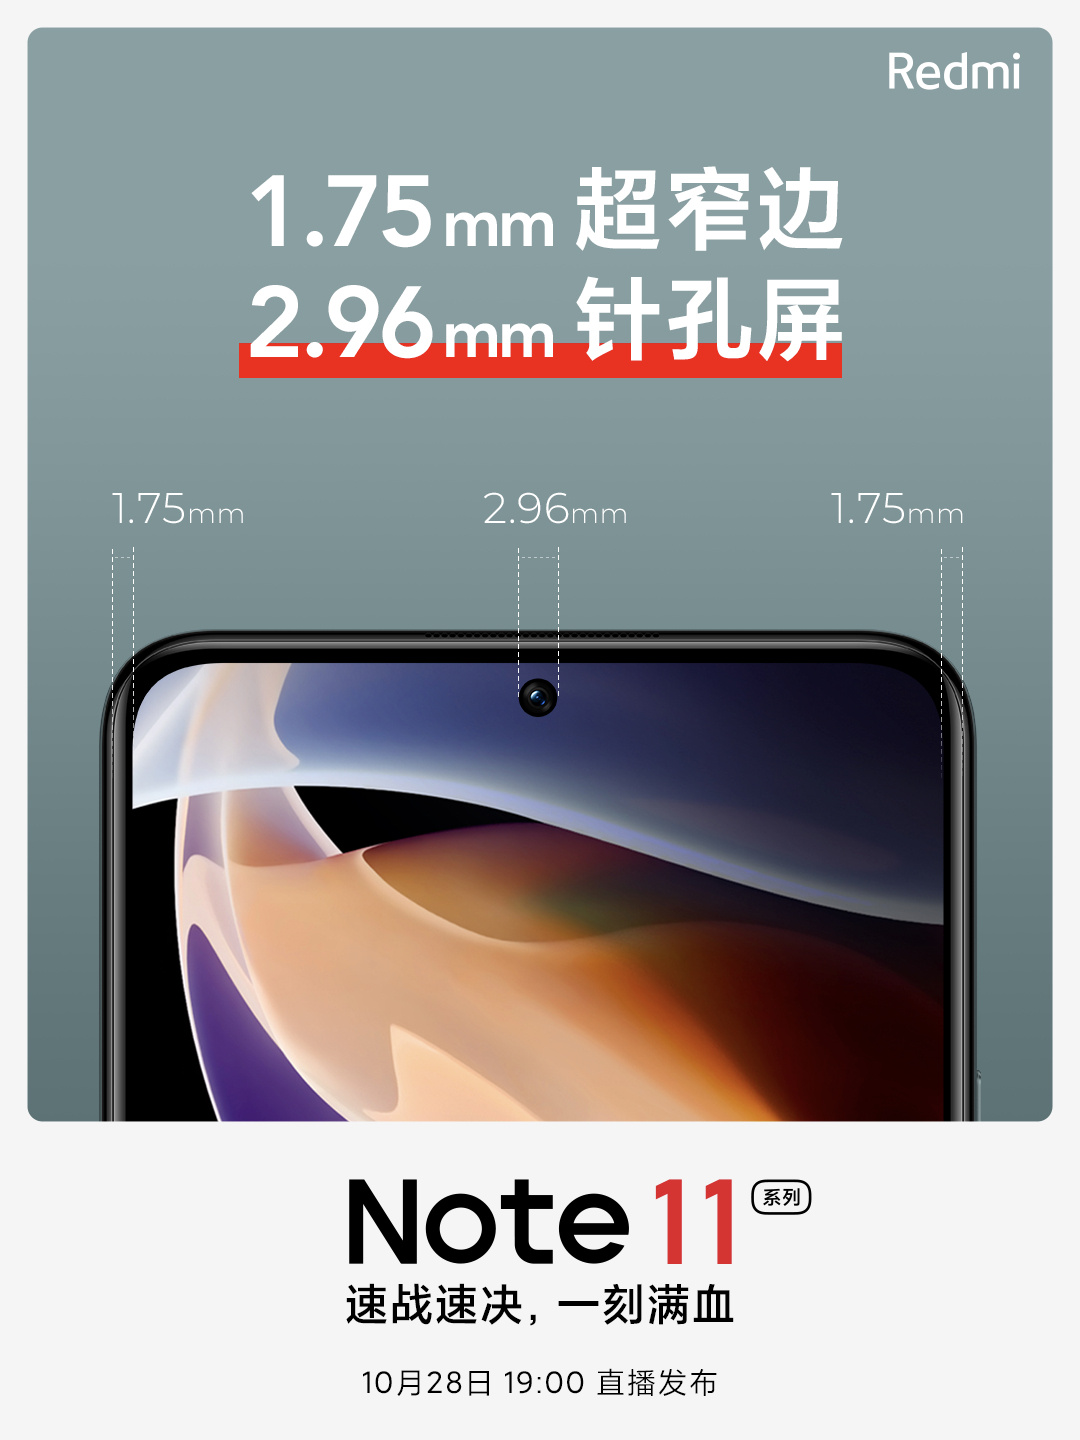  Xiaomi тизерит AMOLED-экраны в новом Redmi Note 11 Xiaomi  - xiaomi_tizerit_amoled_ekrany_v_redmi_note_11_no_est_nuans_3